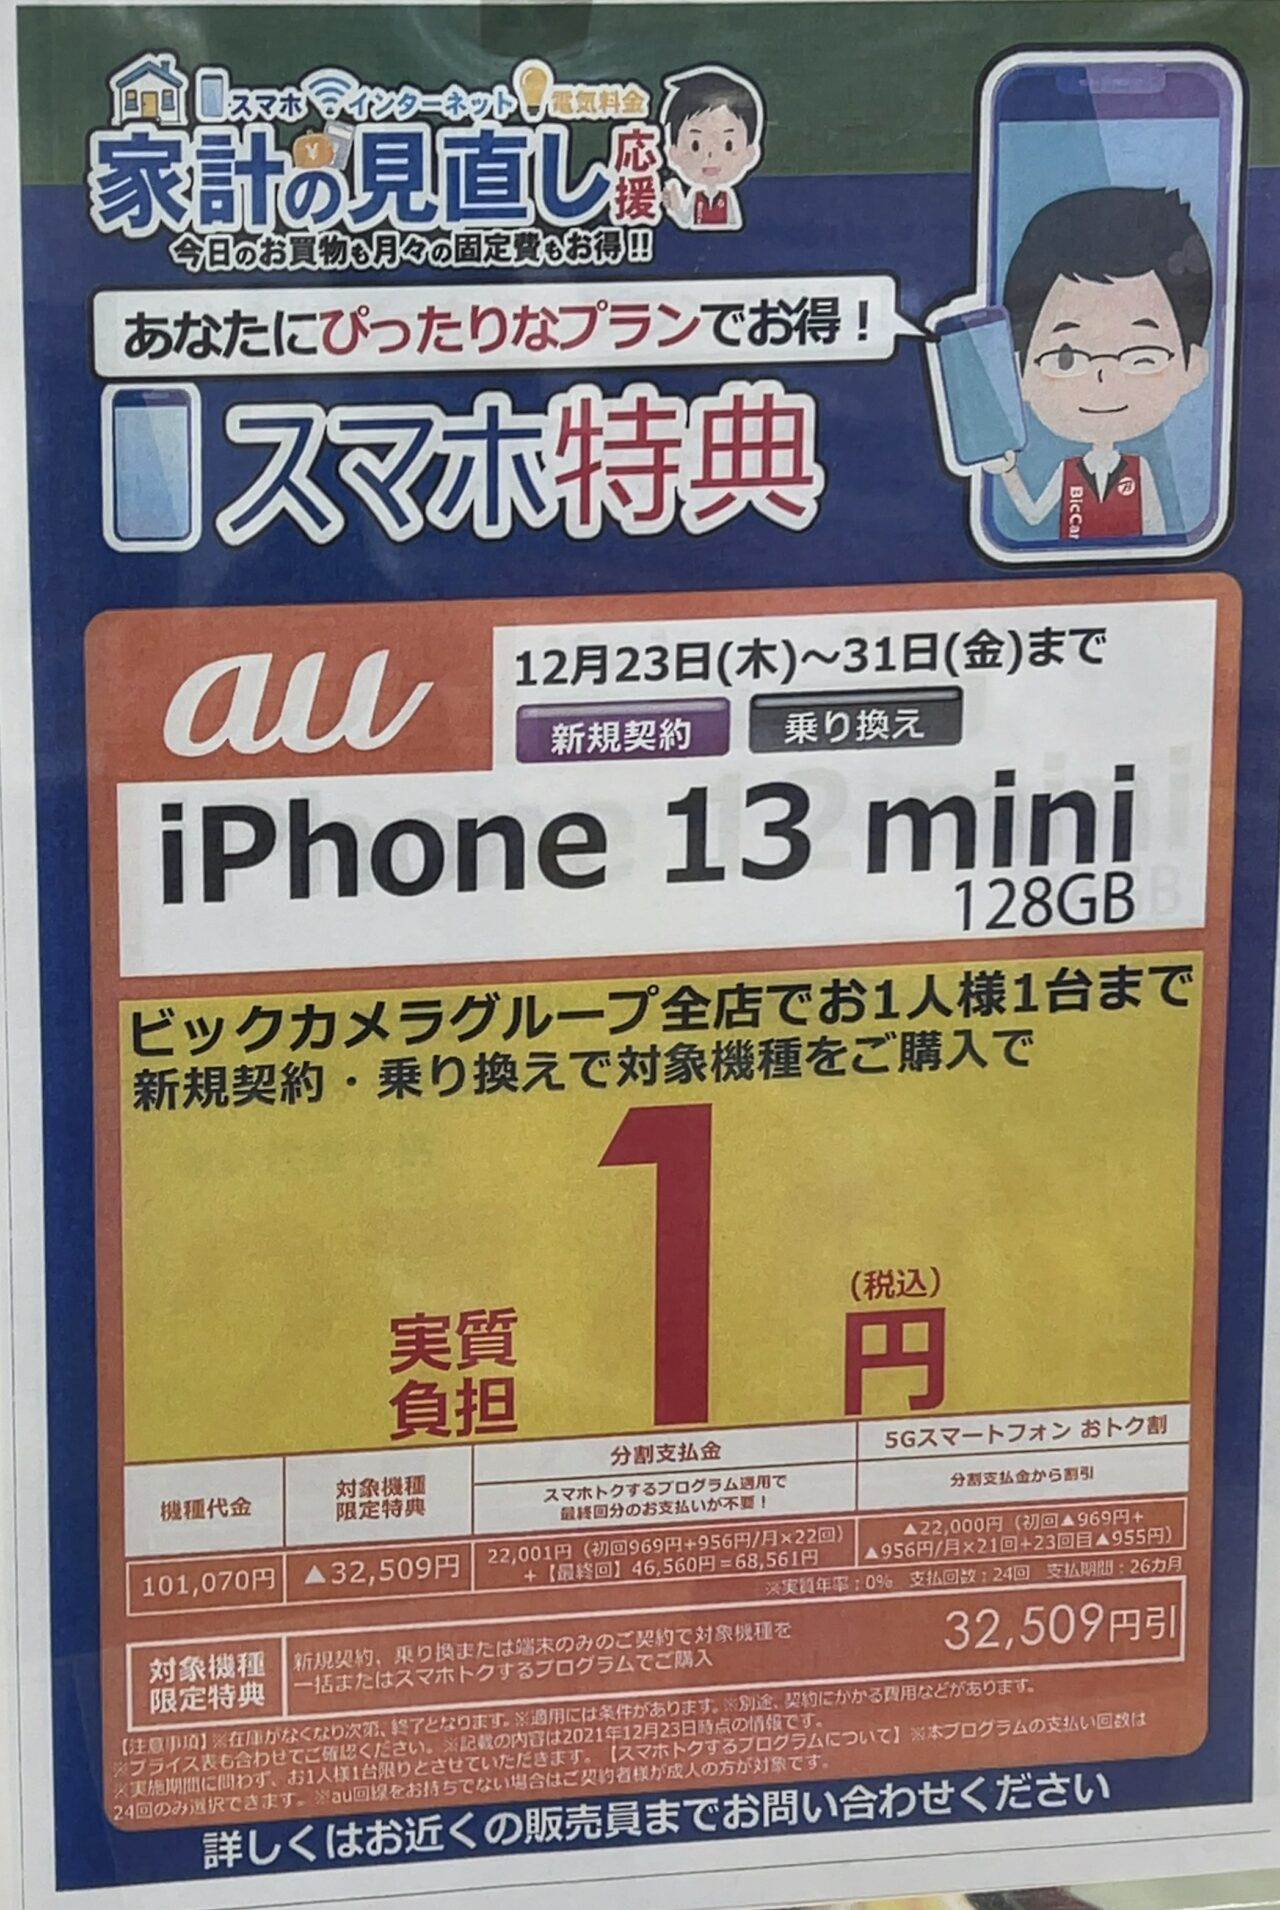 13 投げ売り iphone バラマキが止まらない「iPhone 投げ売り」総まとめ【13